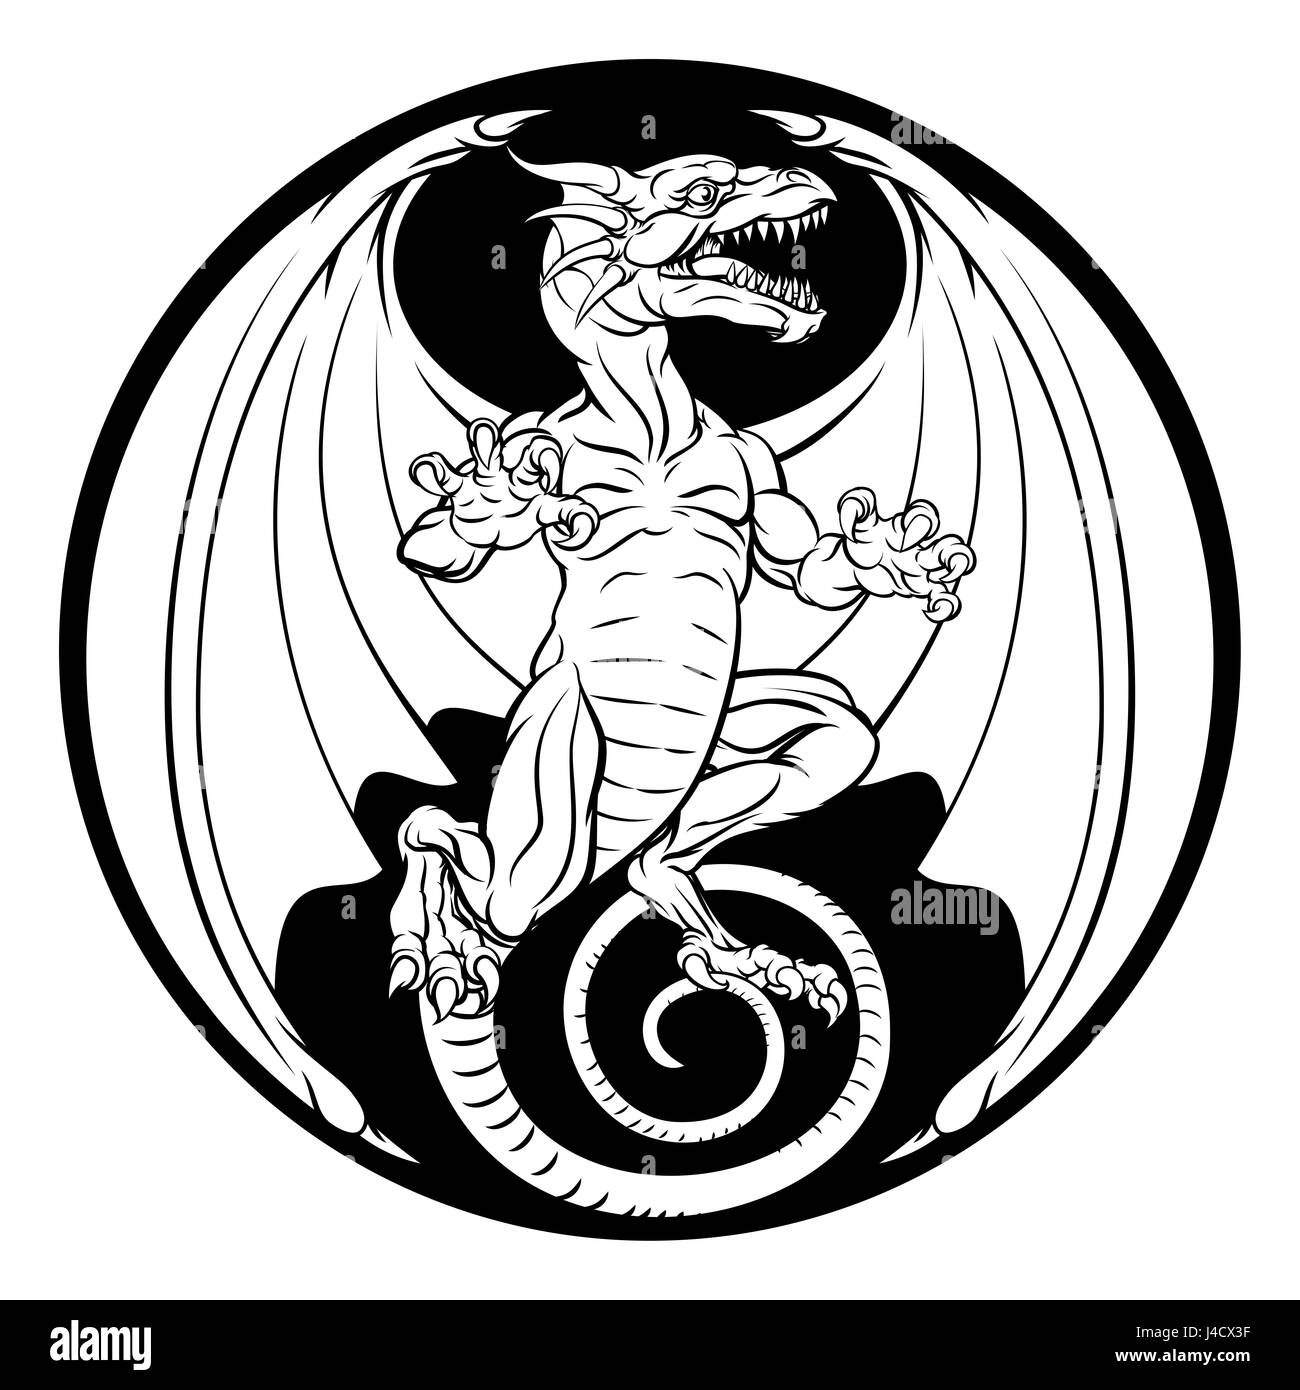 Illustration d'un dragon dans une conception circulaire Banque D'Images